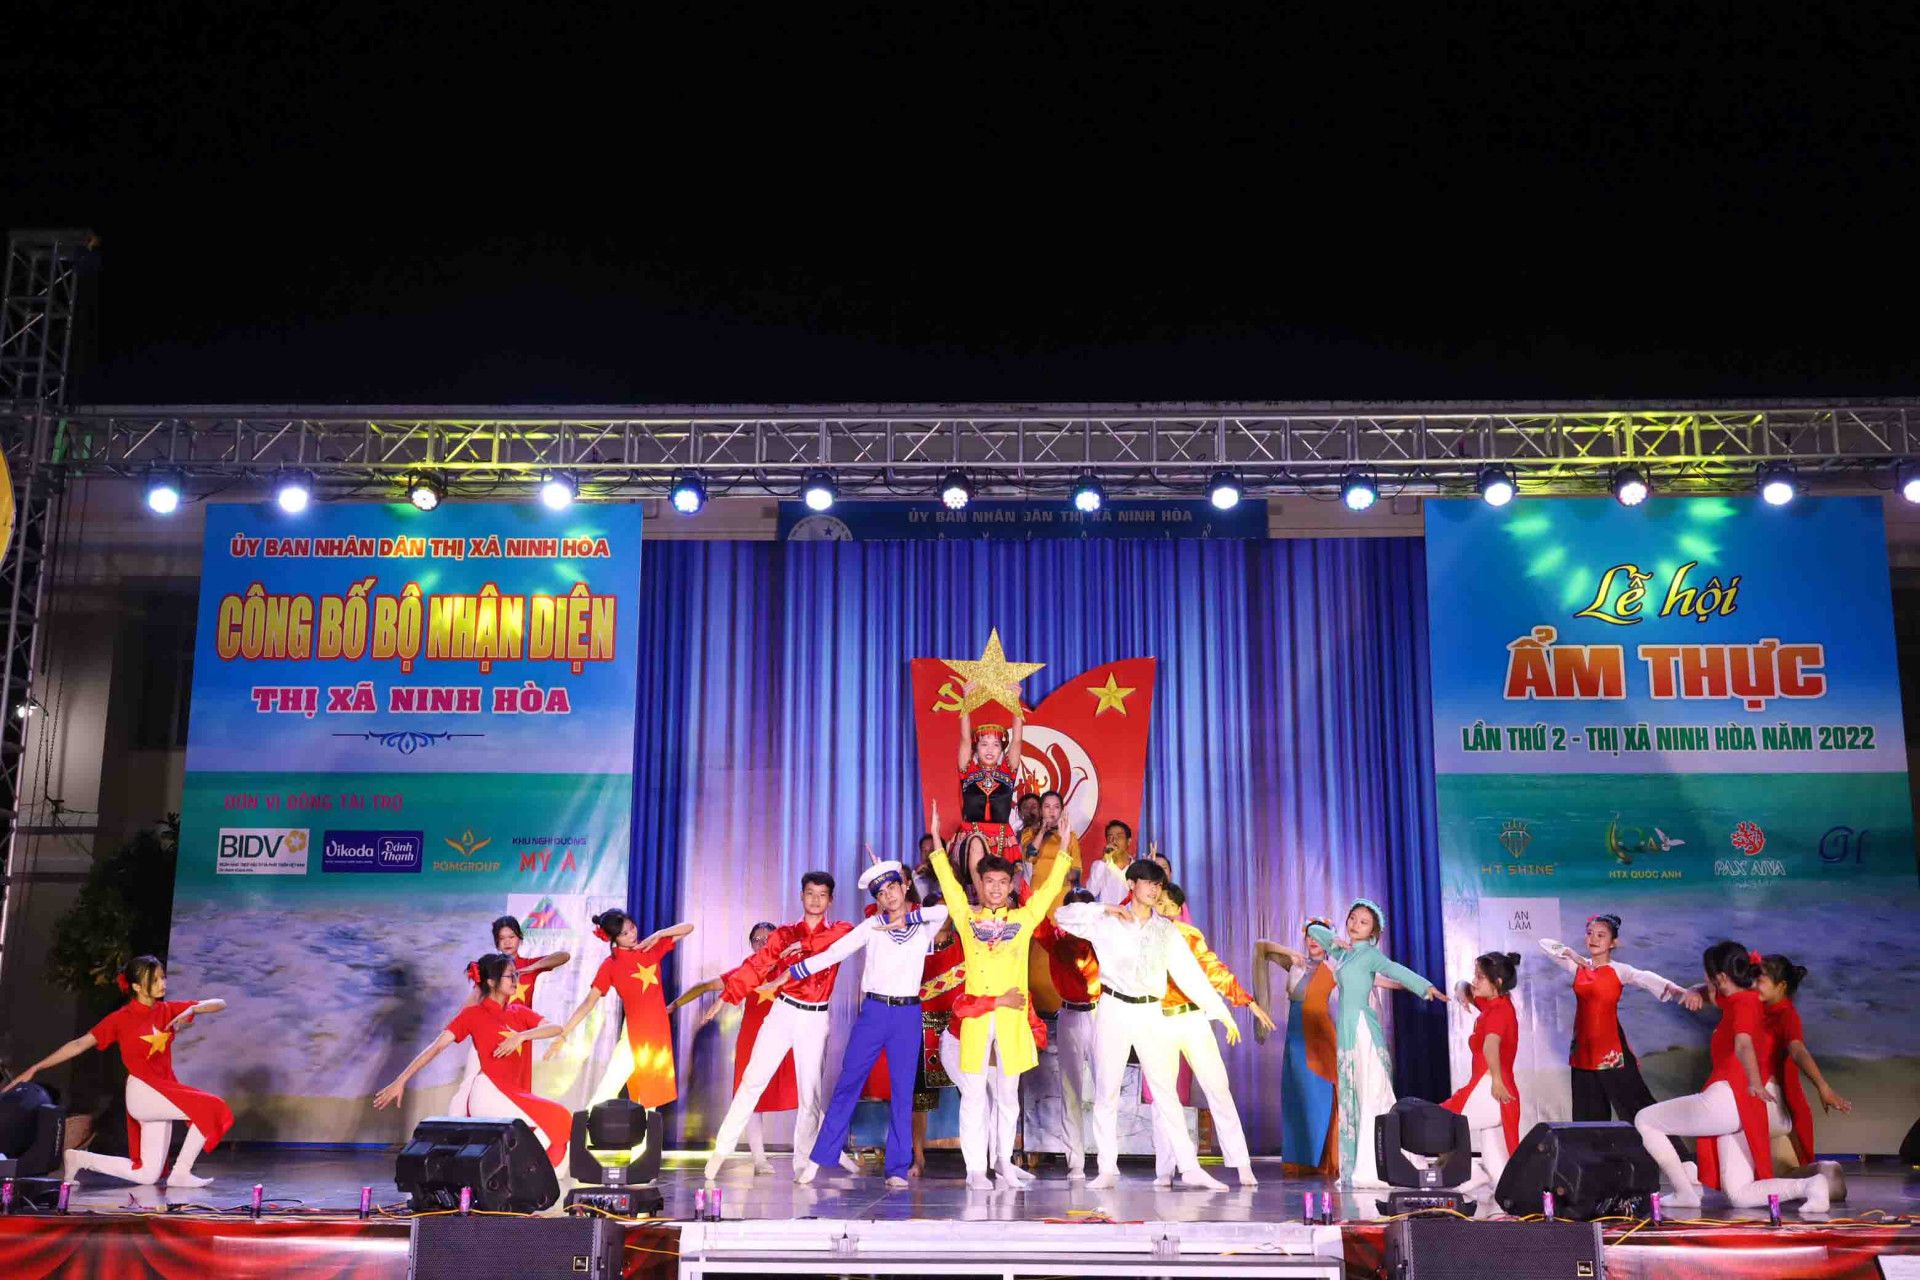 Khu vực sân khấu trung tâm lễ hội luôn có sự tham gia biểu diễn các tiết mục văn nghệ xuất sắc được chọn lọc từ Hội diễn nghệ thuật quần chúng thị xã Ninh Hòa năm 2022. 